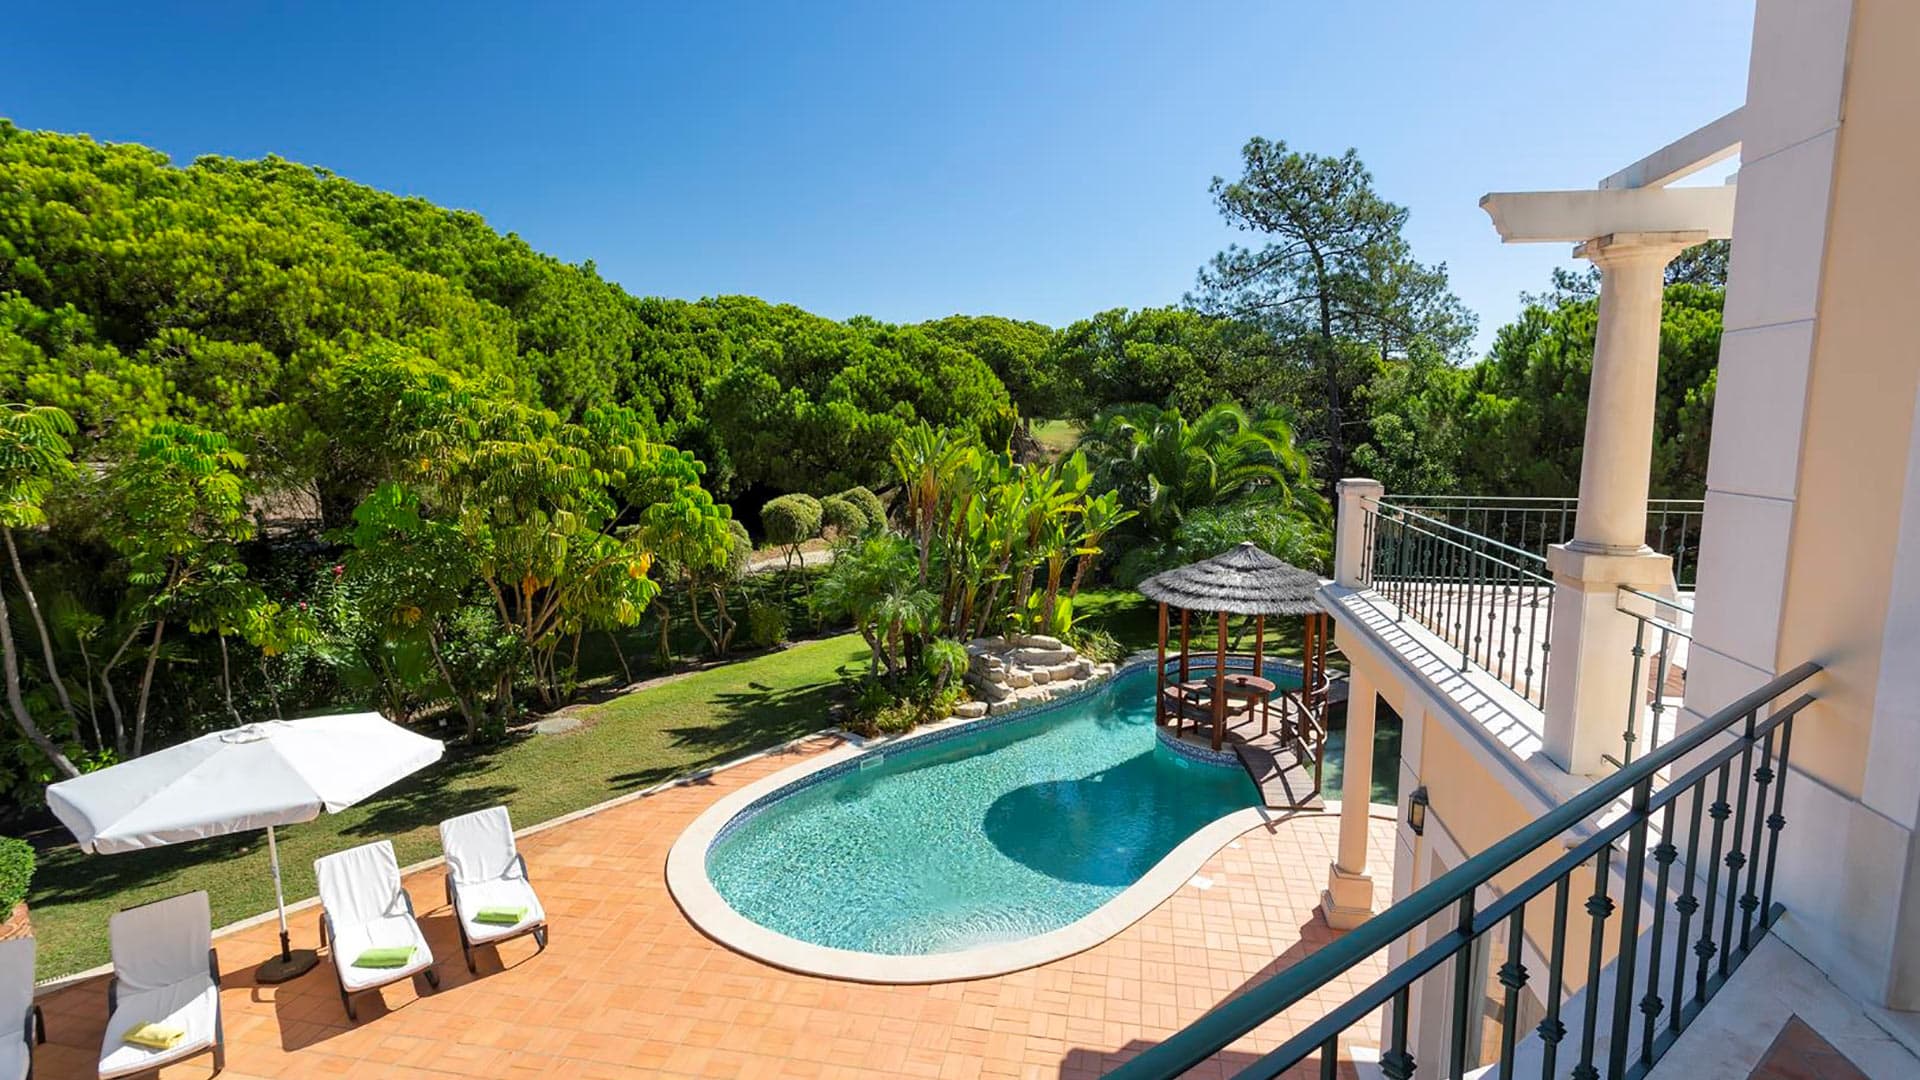 Villa Villa Island, Rental in Algarve